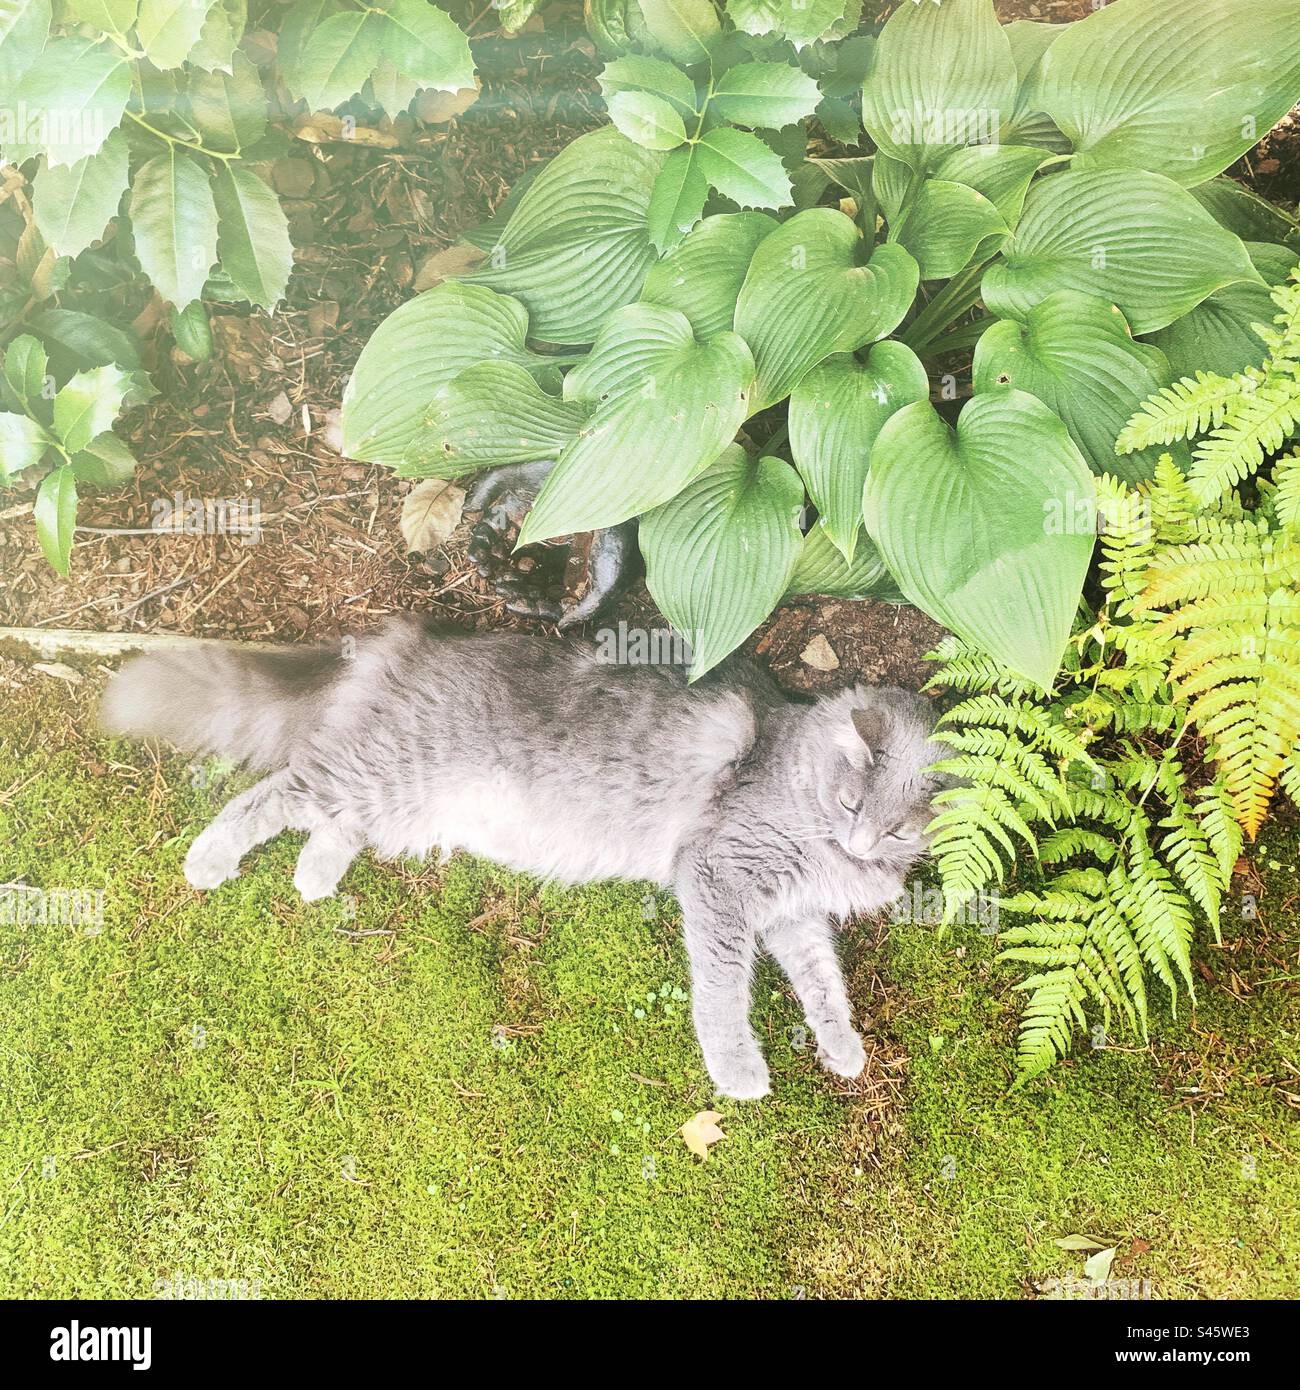 Die Katze ruht auf grünem Moos bei einem Farn in einem schattigen Garten. Stockfoto